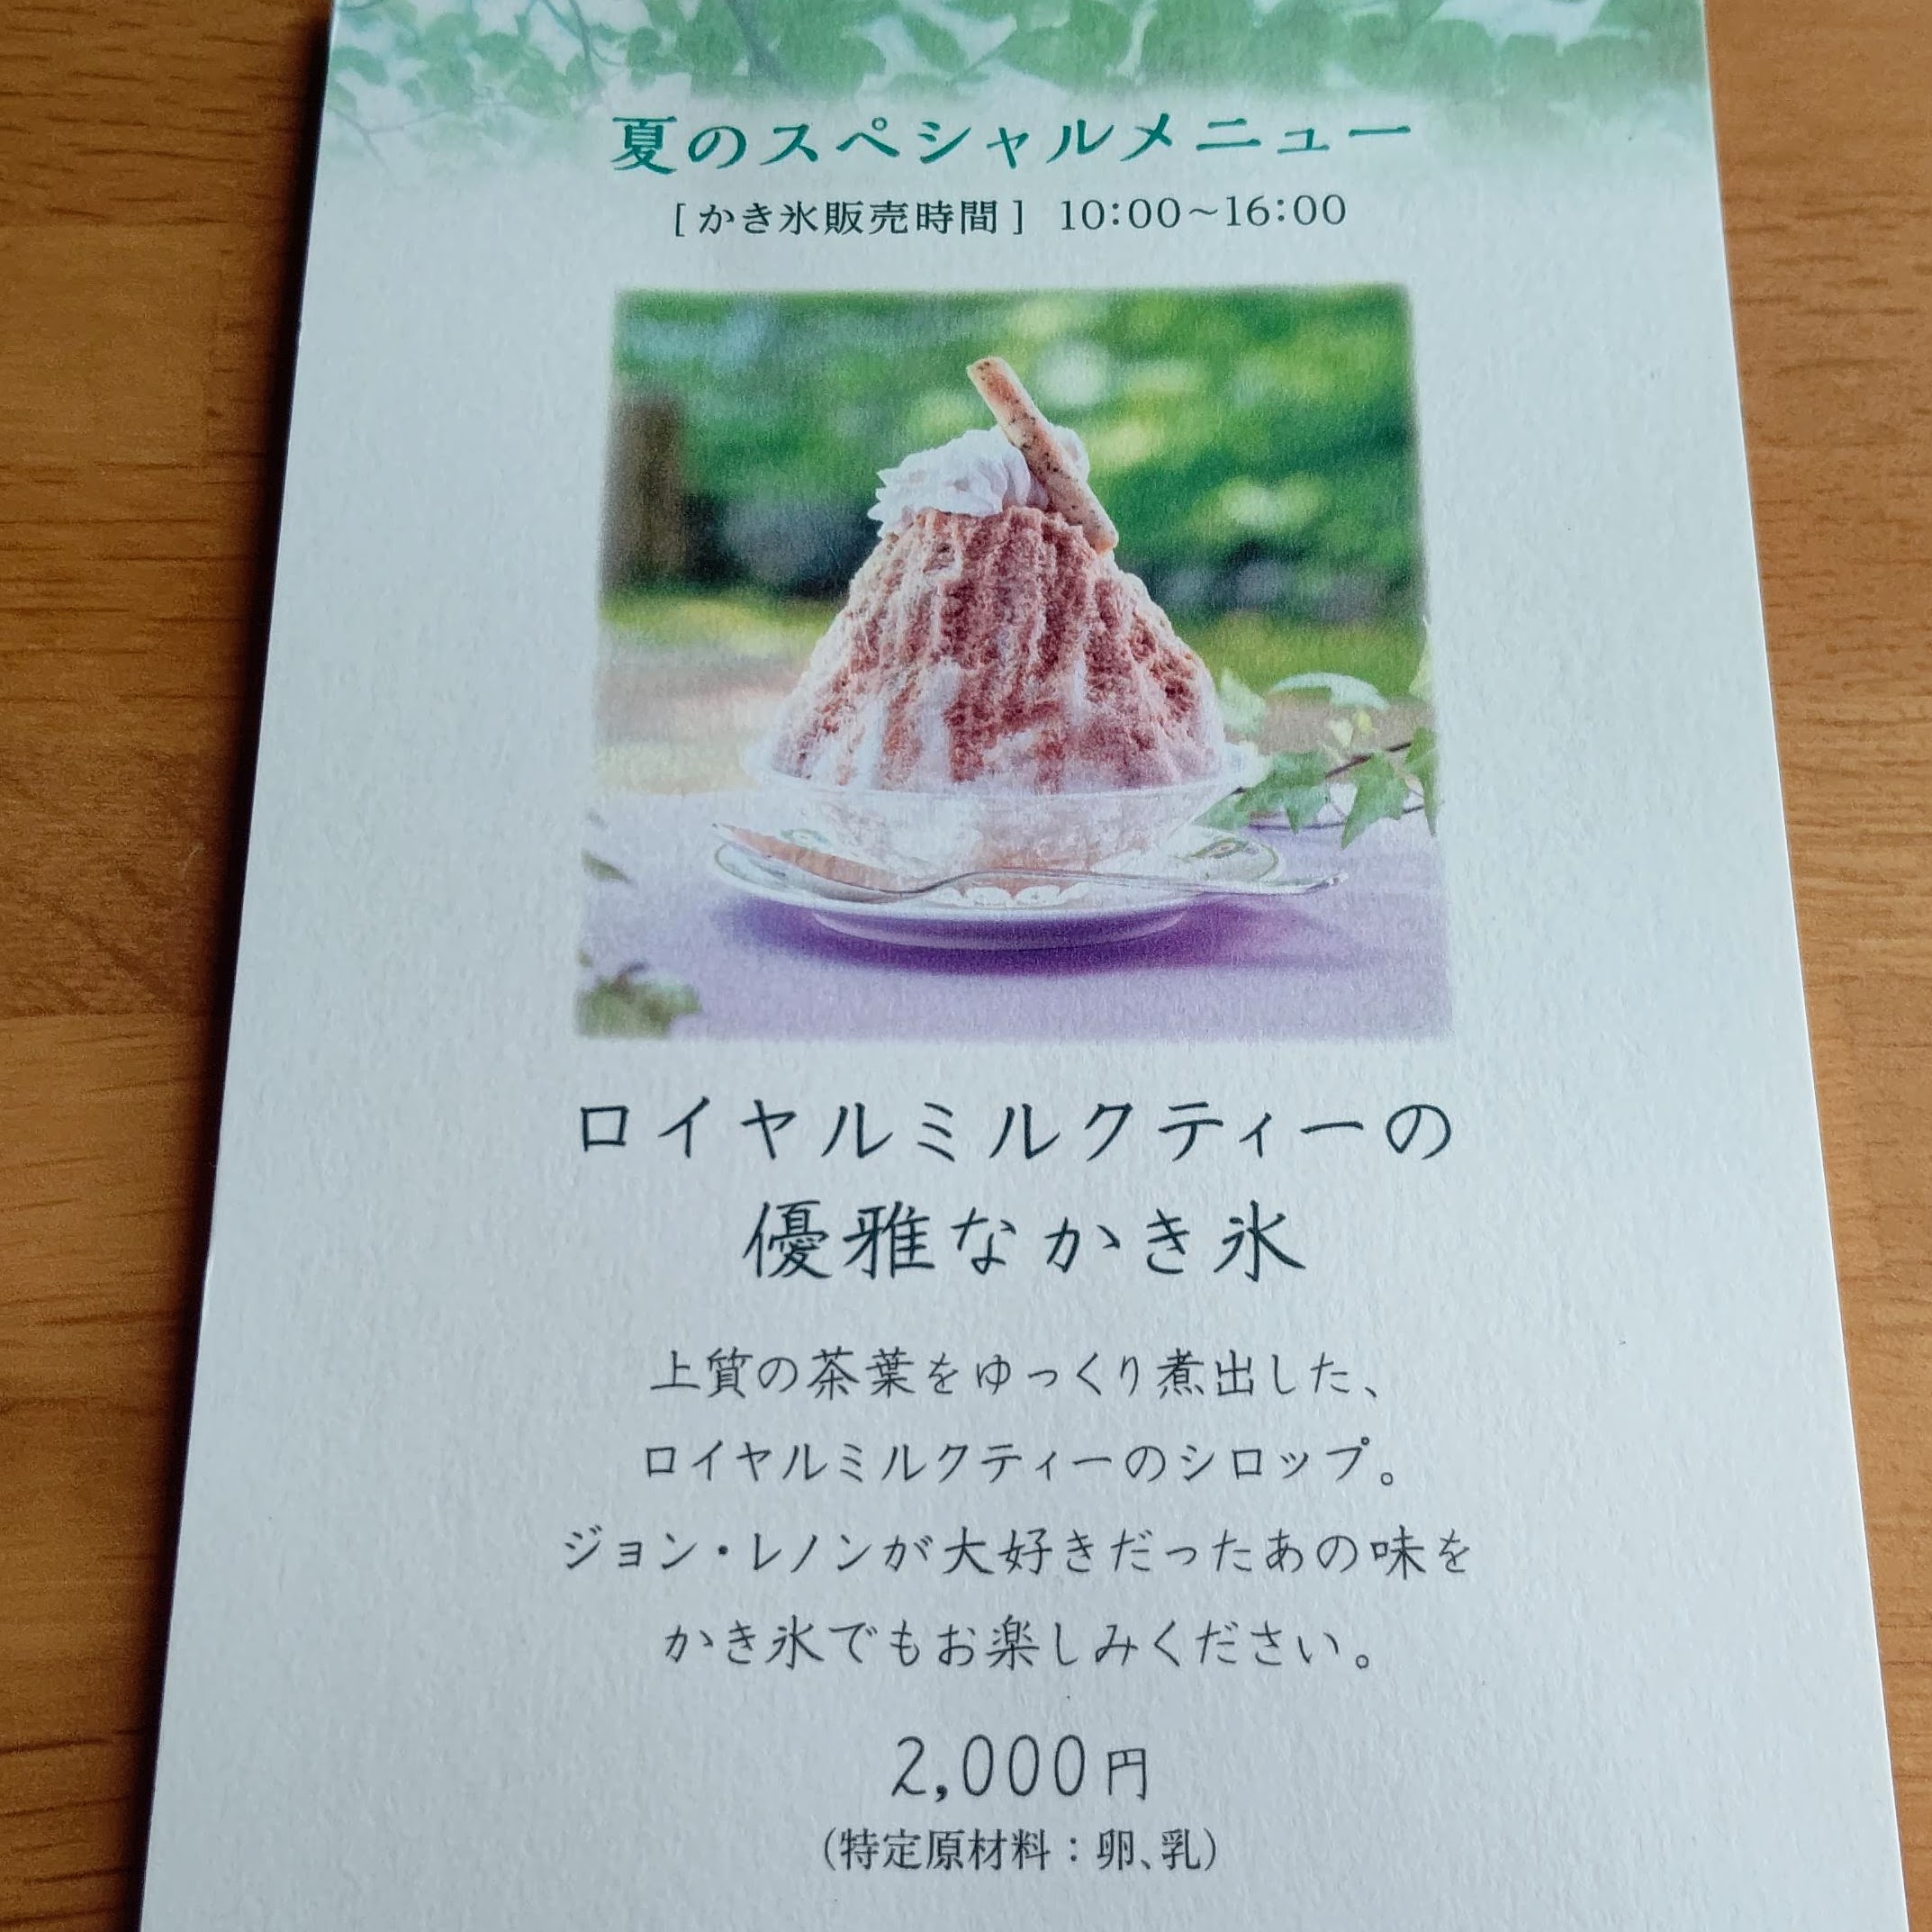 長野県北佐久郡 万平ホテル カフェテラス ロイヤルミルクティーの優雅なかき氷